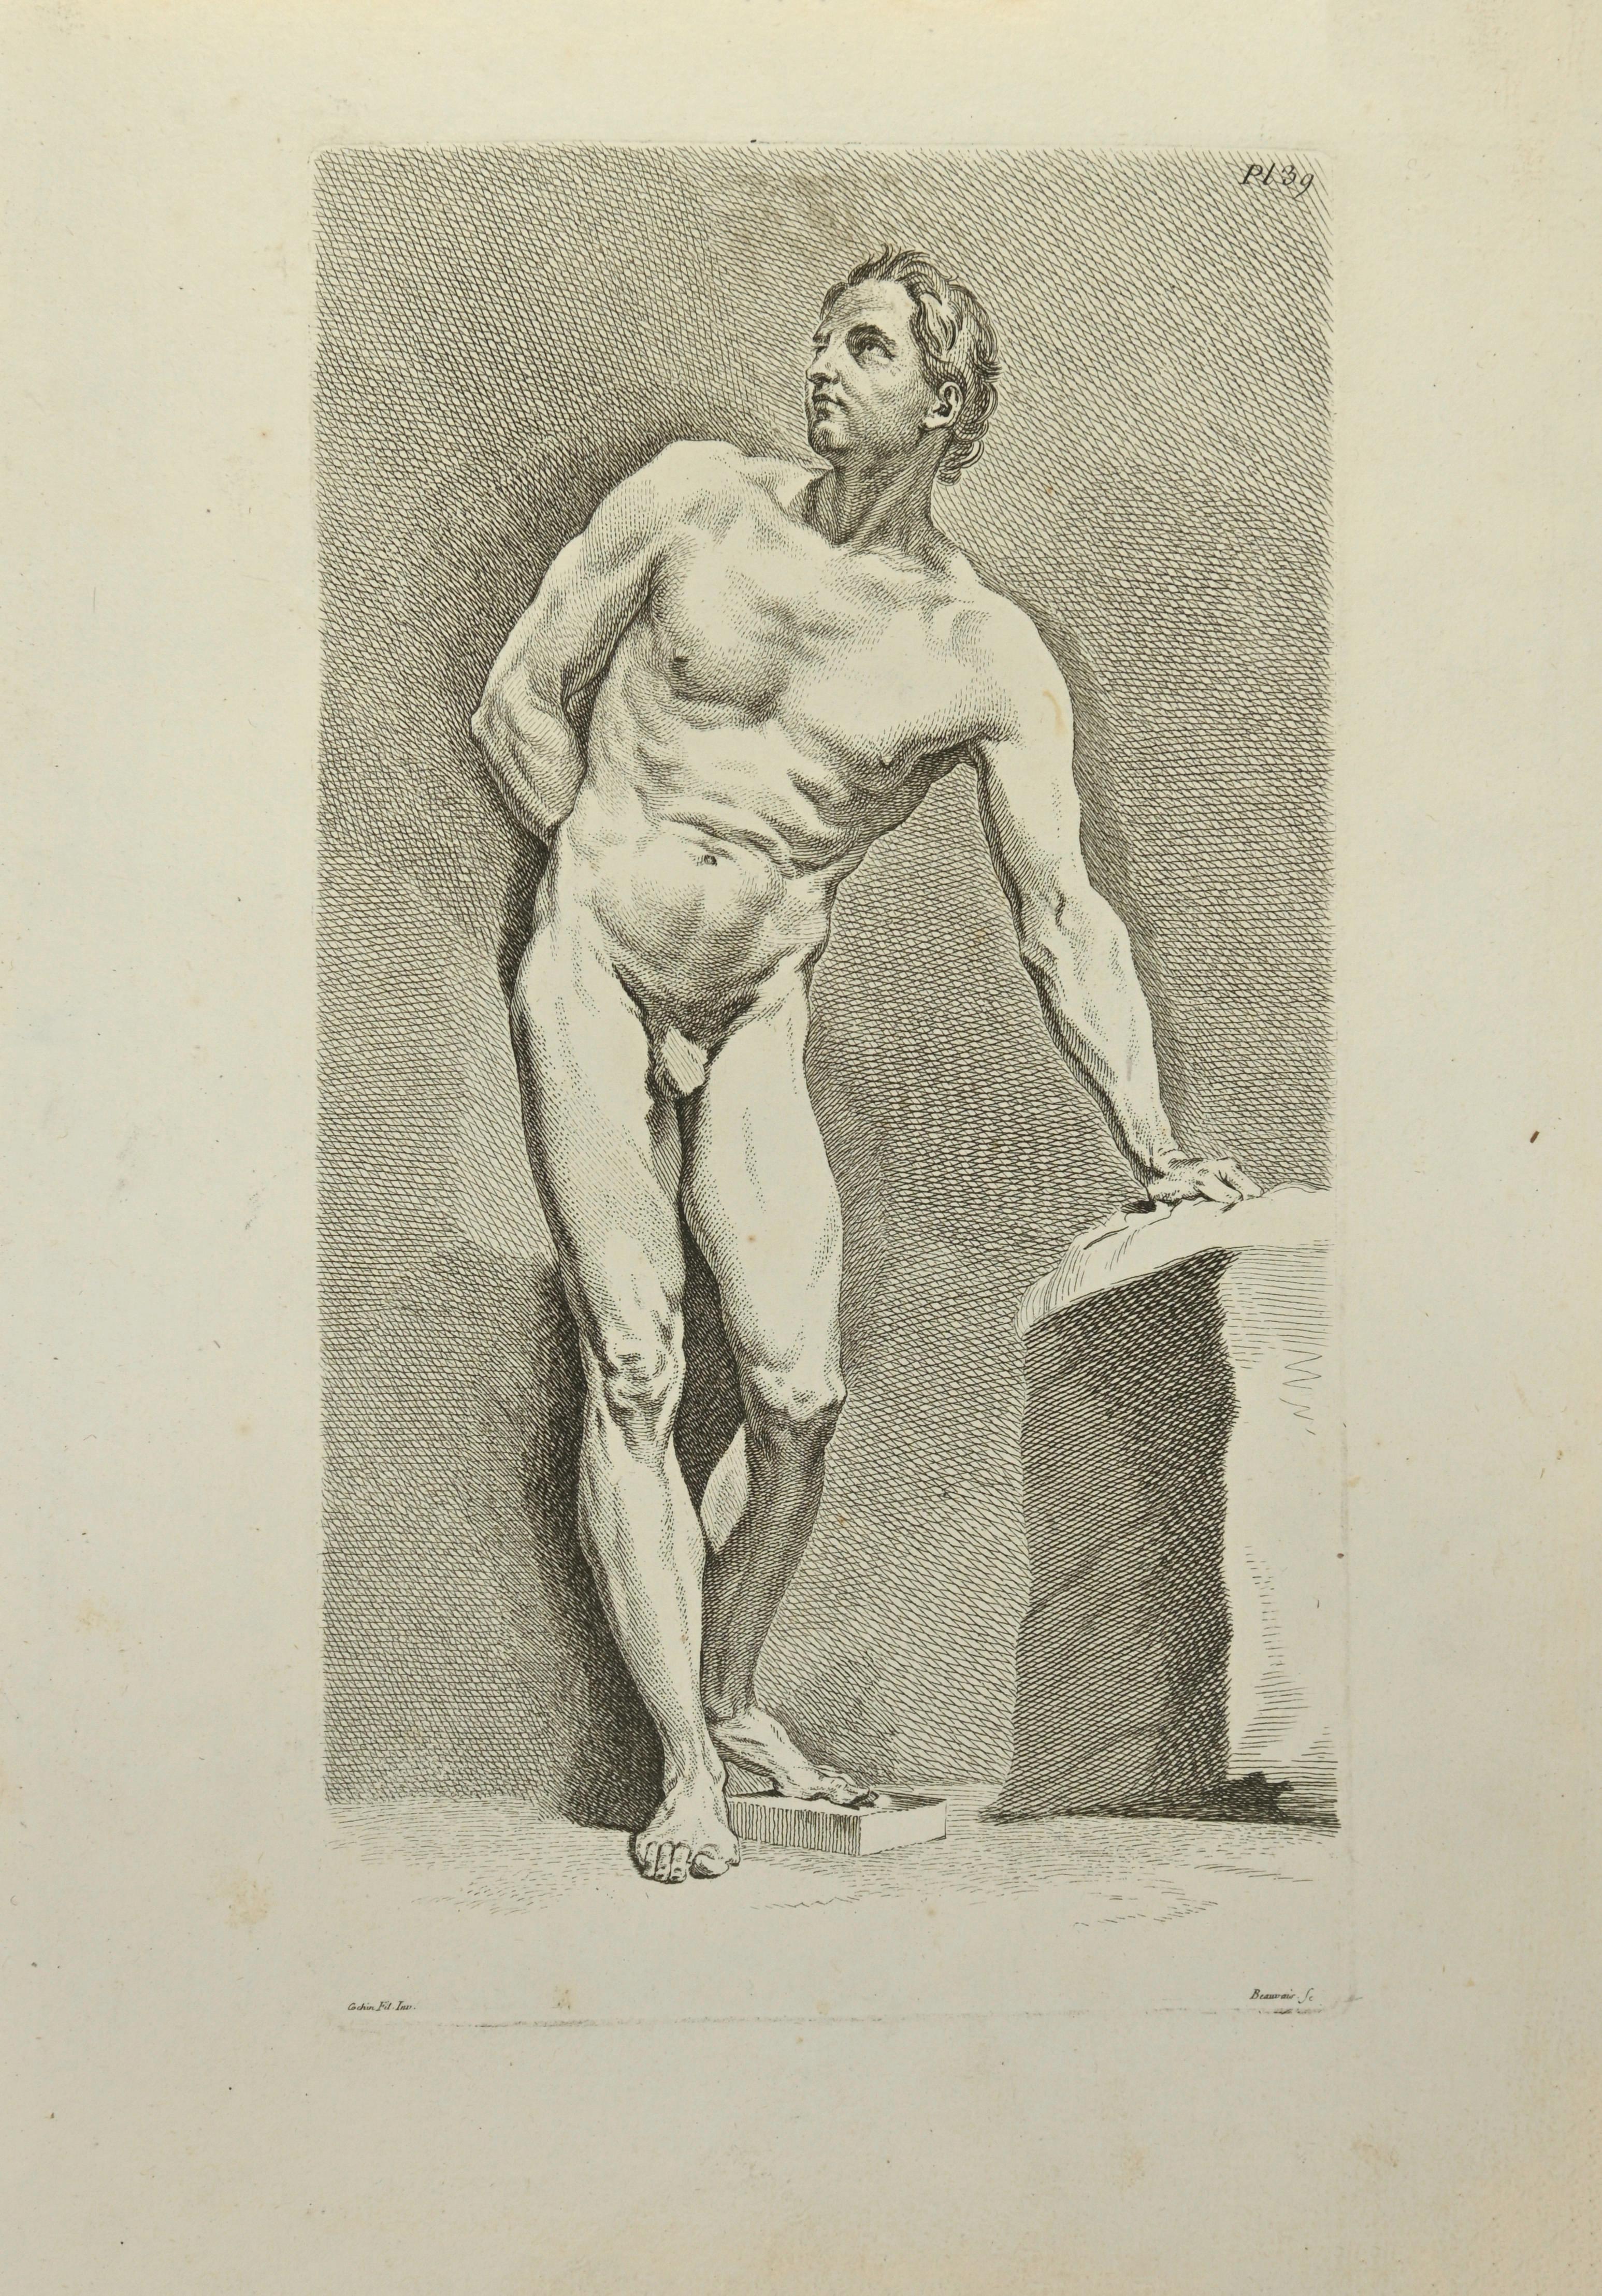 Anatomie-Studien ist eine Radierung von Nicolas-Dauphin de Beauvais aus dem 18. Jahrhundert.

Guter Zustand mit Stockflecken.

Signiert auf der Platte.

Das Kunstwerk wird mit sicheren Strichen dargestellt.